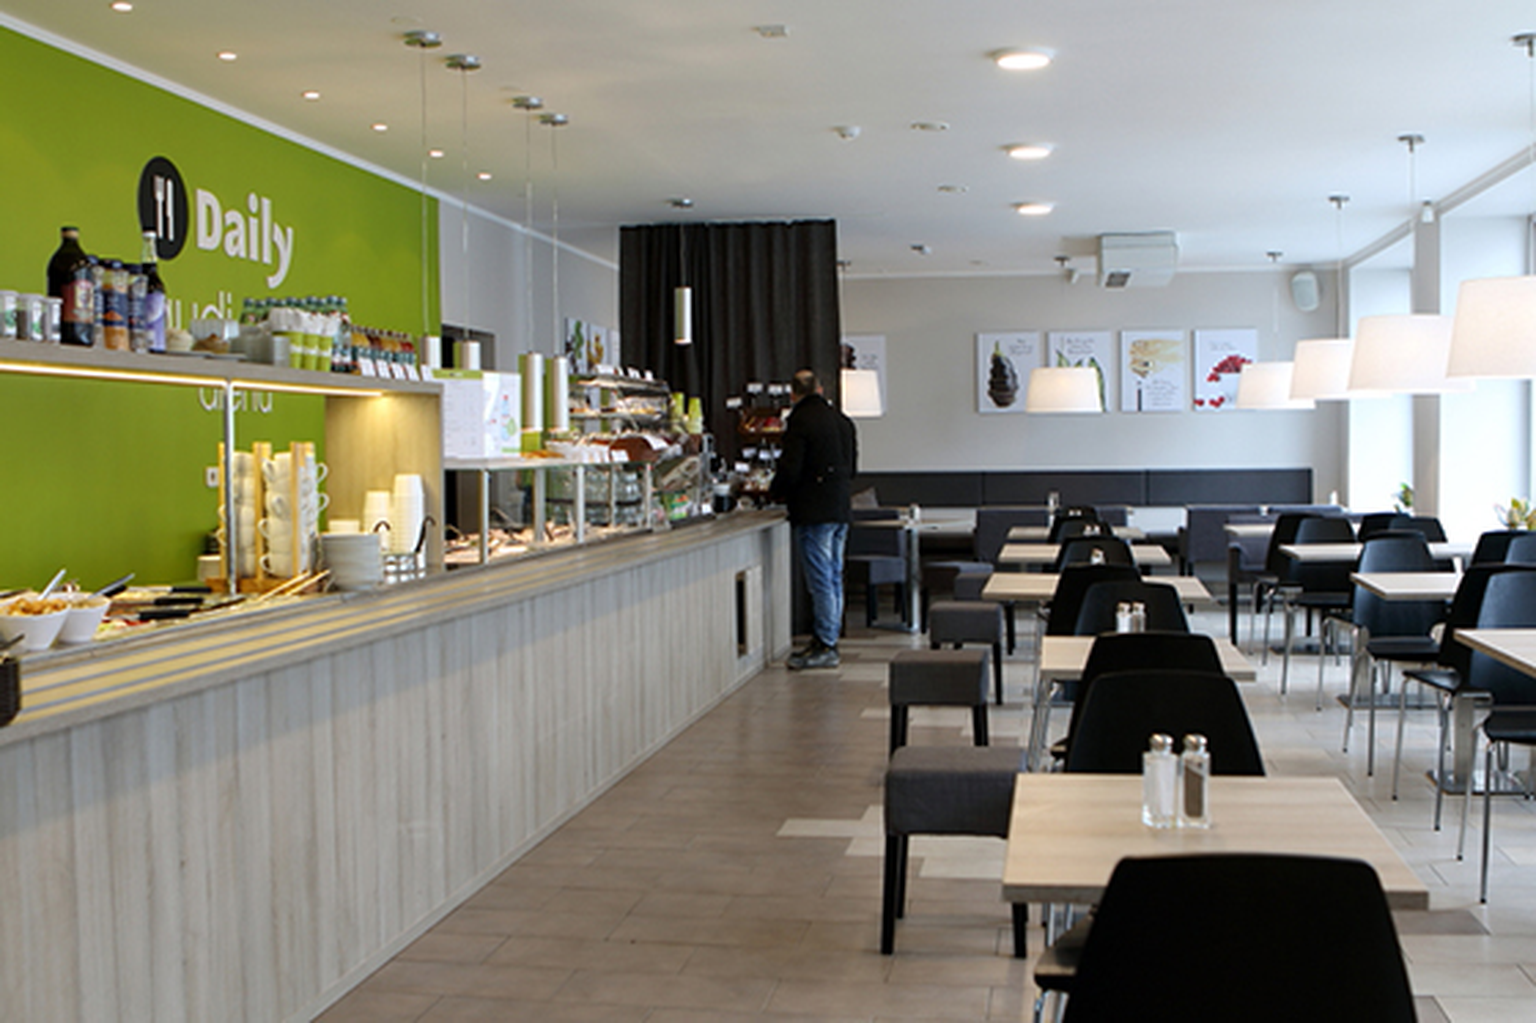 Baltic Restaurants Estonia kaubamärkide hulka kuuluvad Daily, Chat, TakeOff ja SubWay